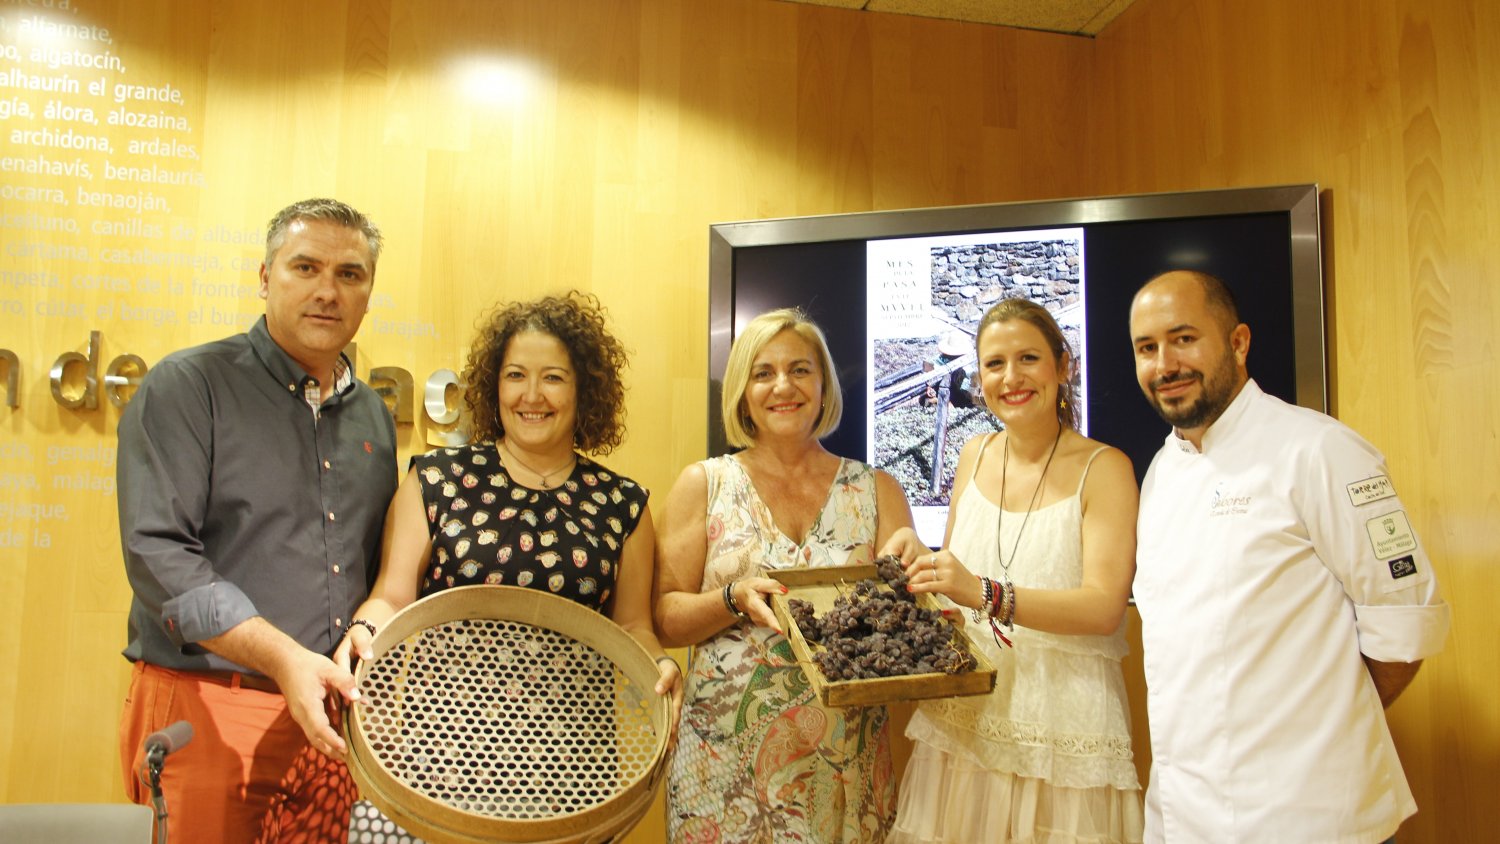 Vélez-Málaga rinde homenaje a la pasa con un ciclo de actividades dedicado a este fruto